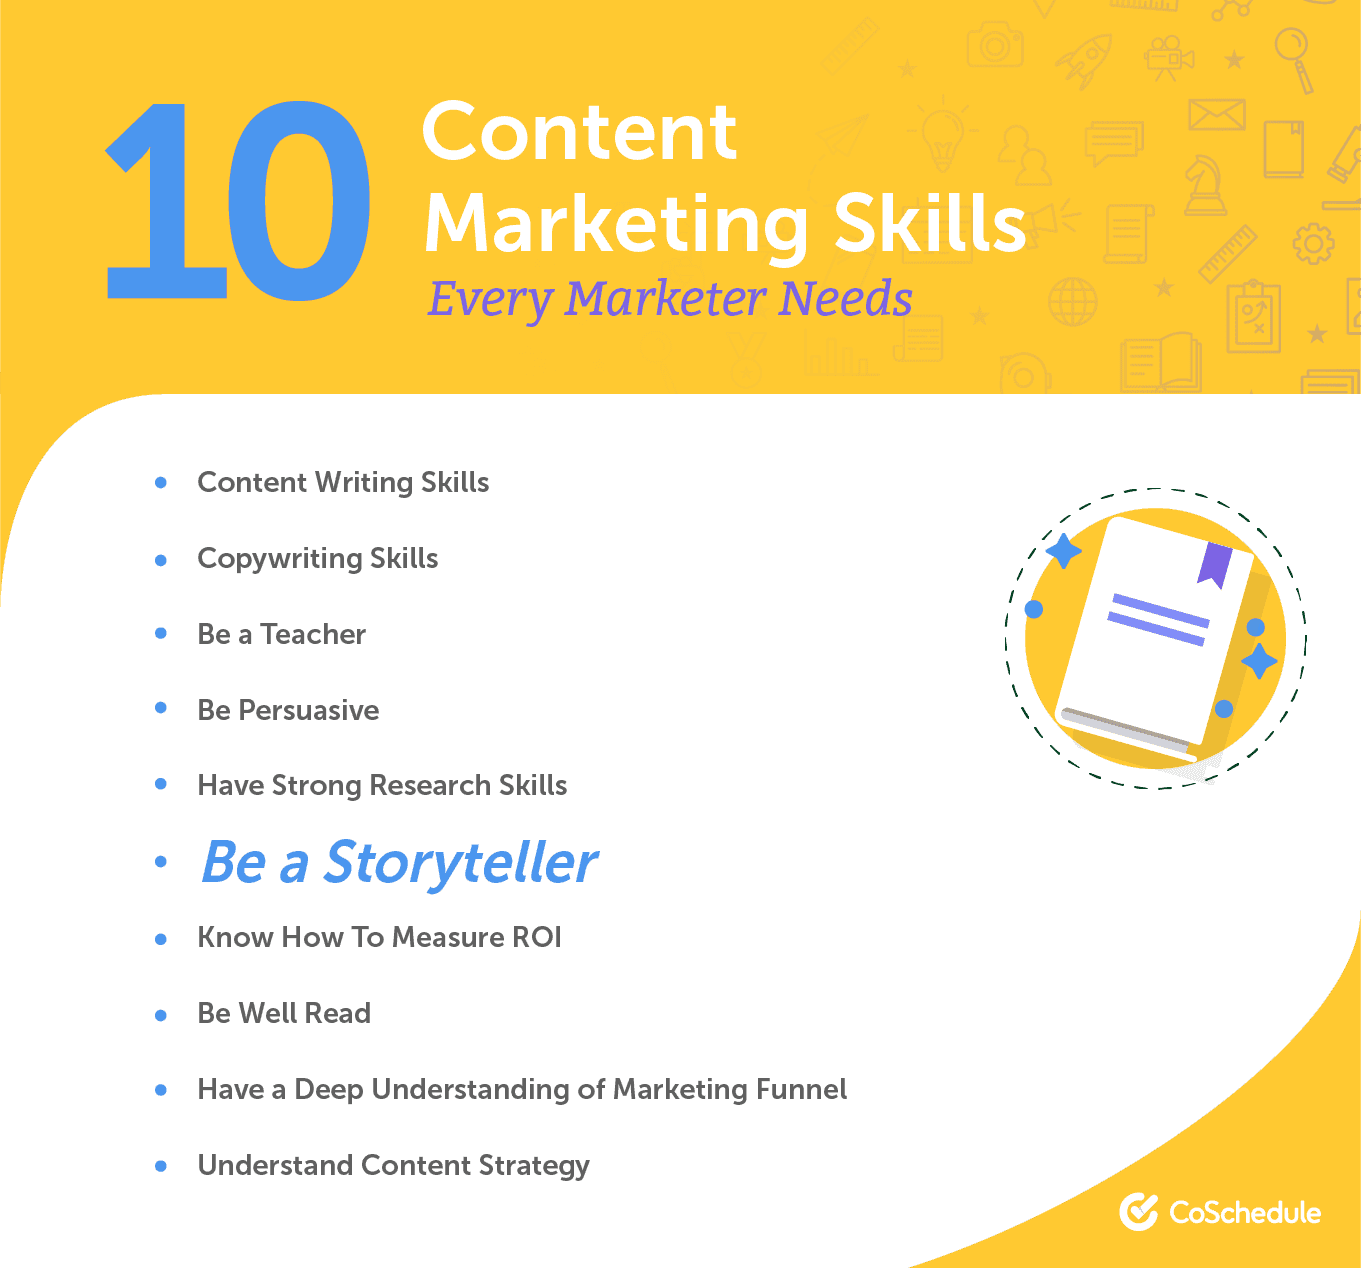 10 content marketing skills every marketer needs.